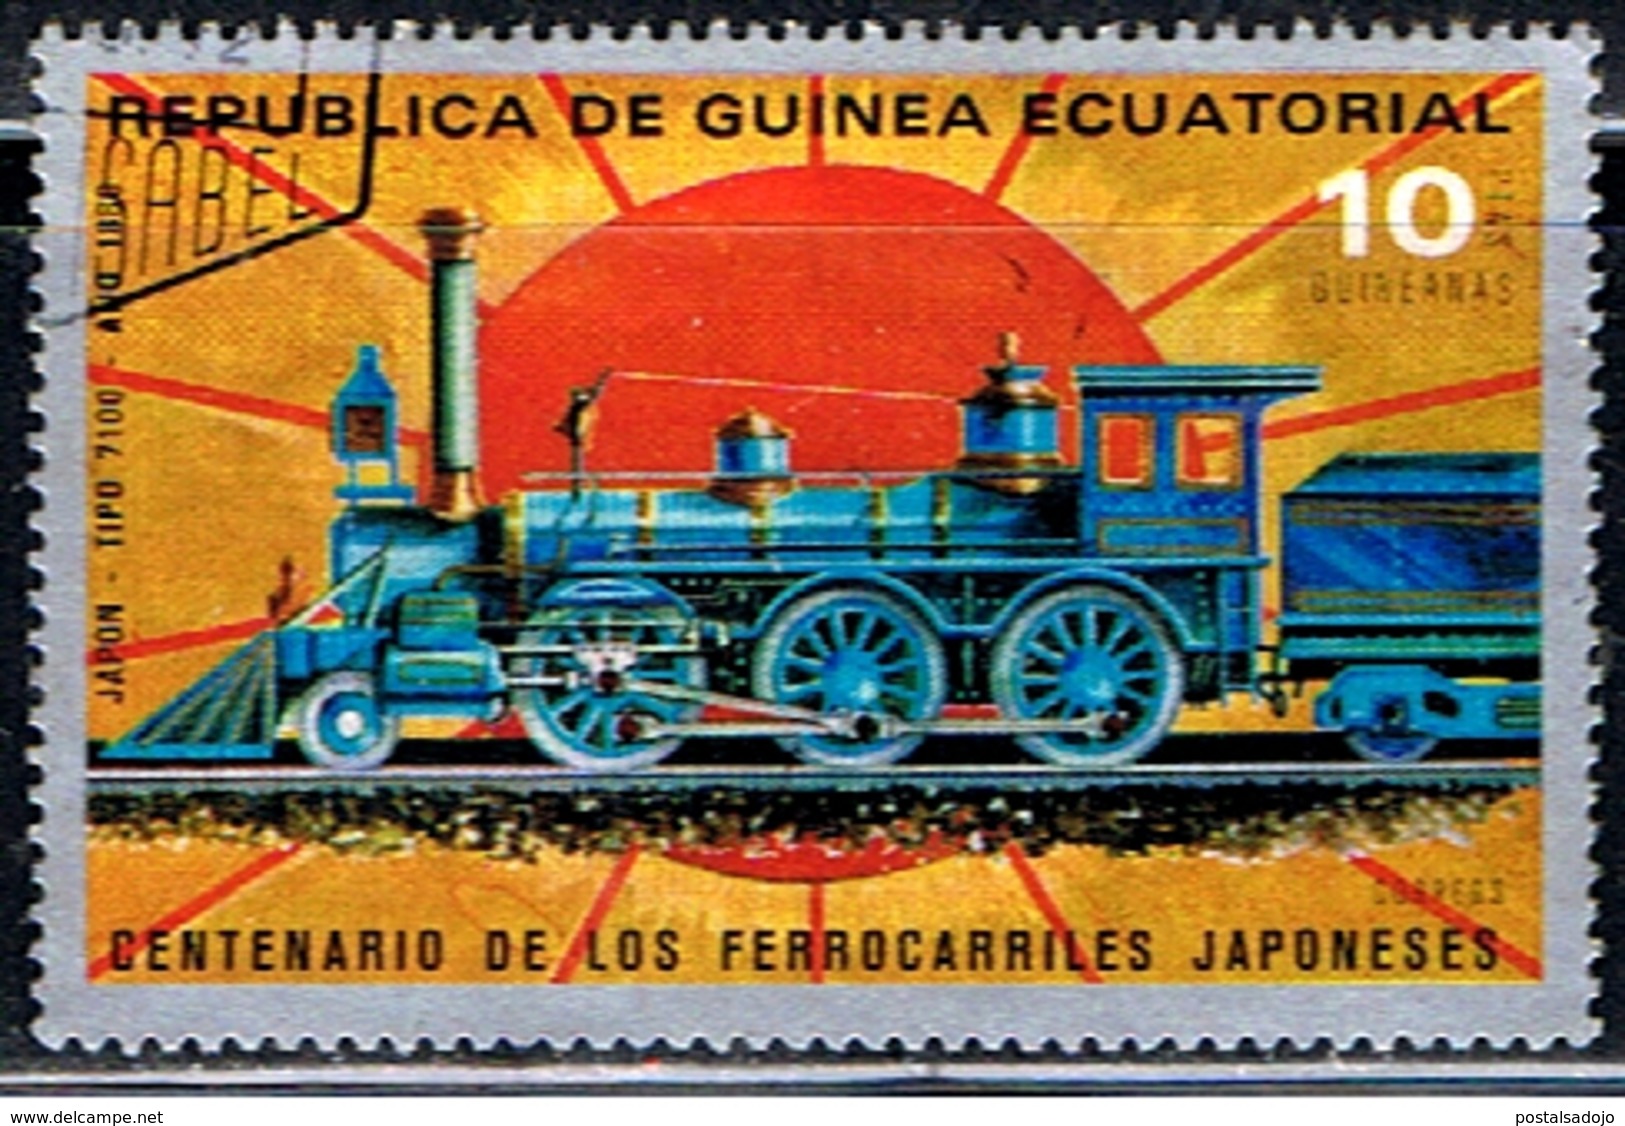 GUINÉE EQUATORIALE 20 // CHEMIN DE FER // 1972 - Äquatorial-Guinea